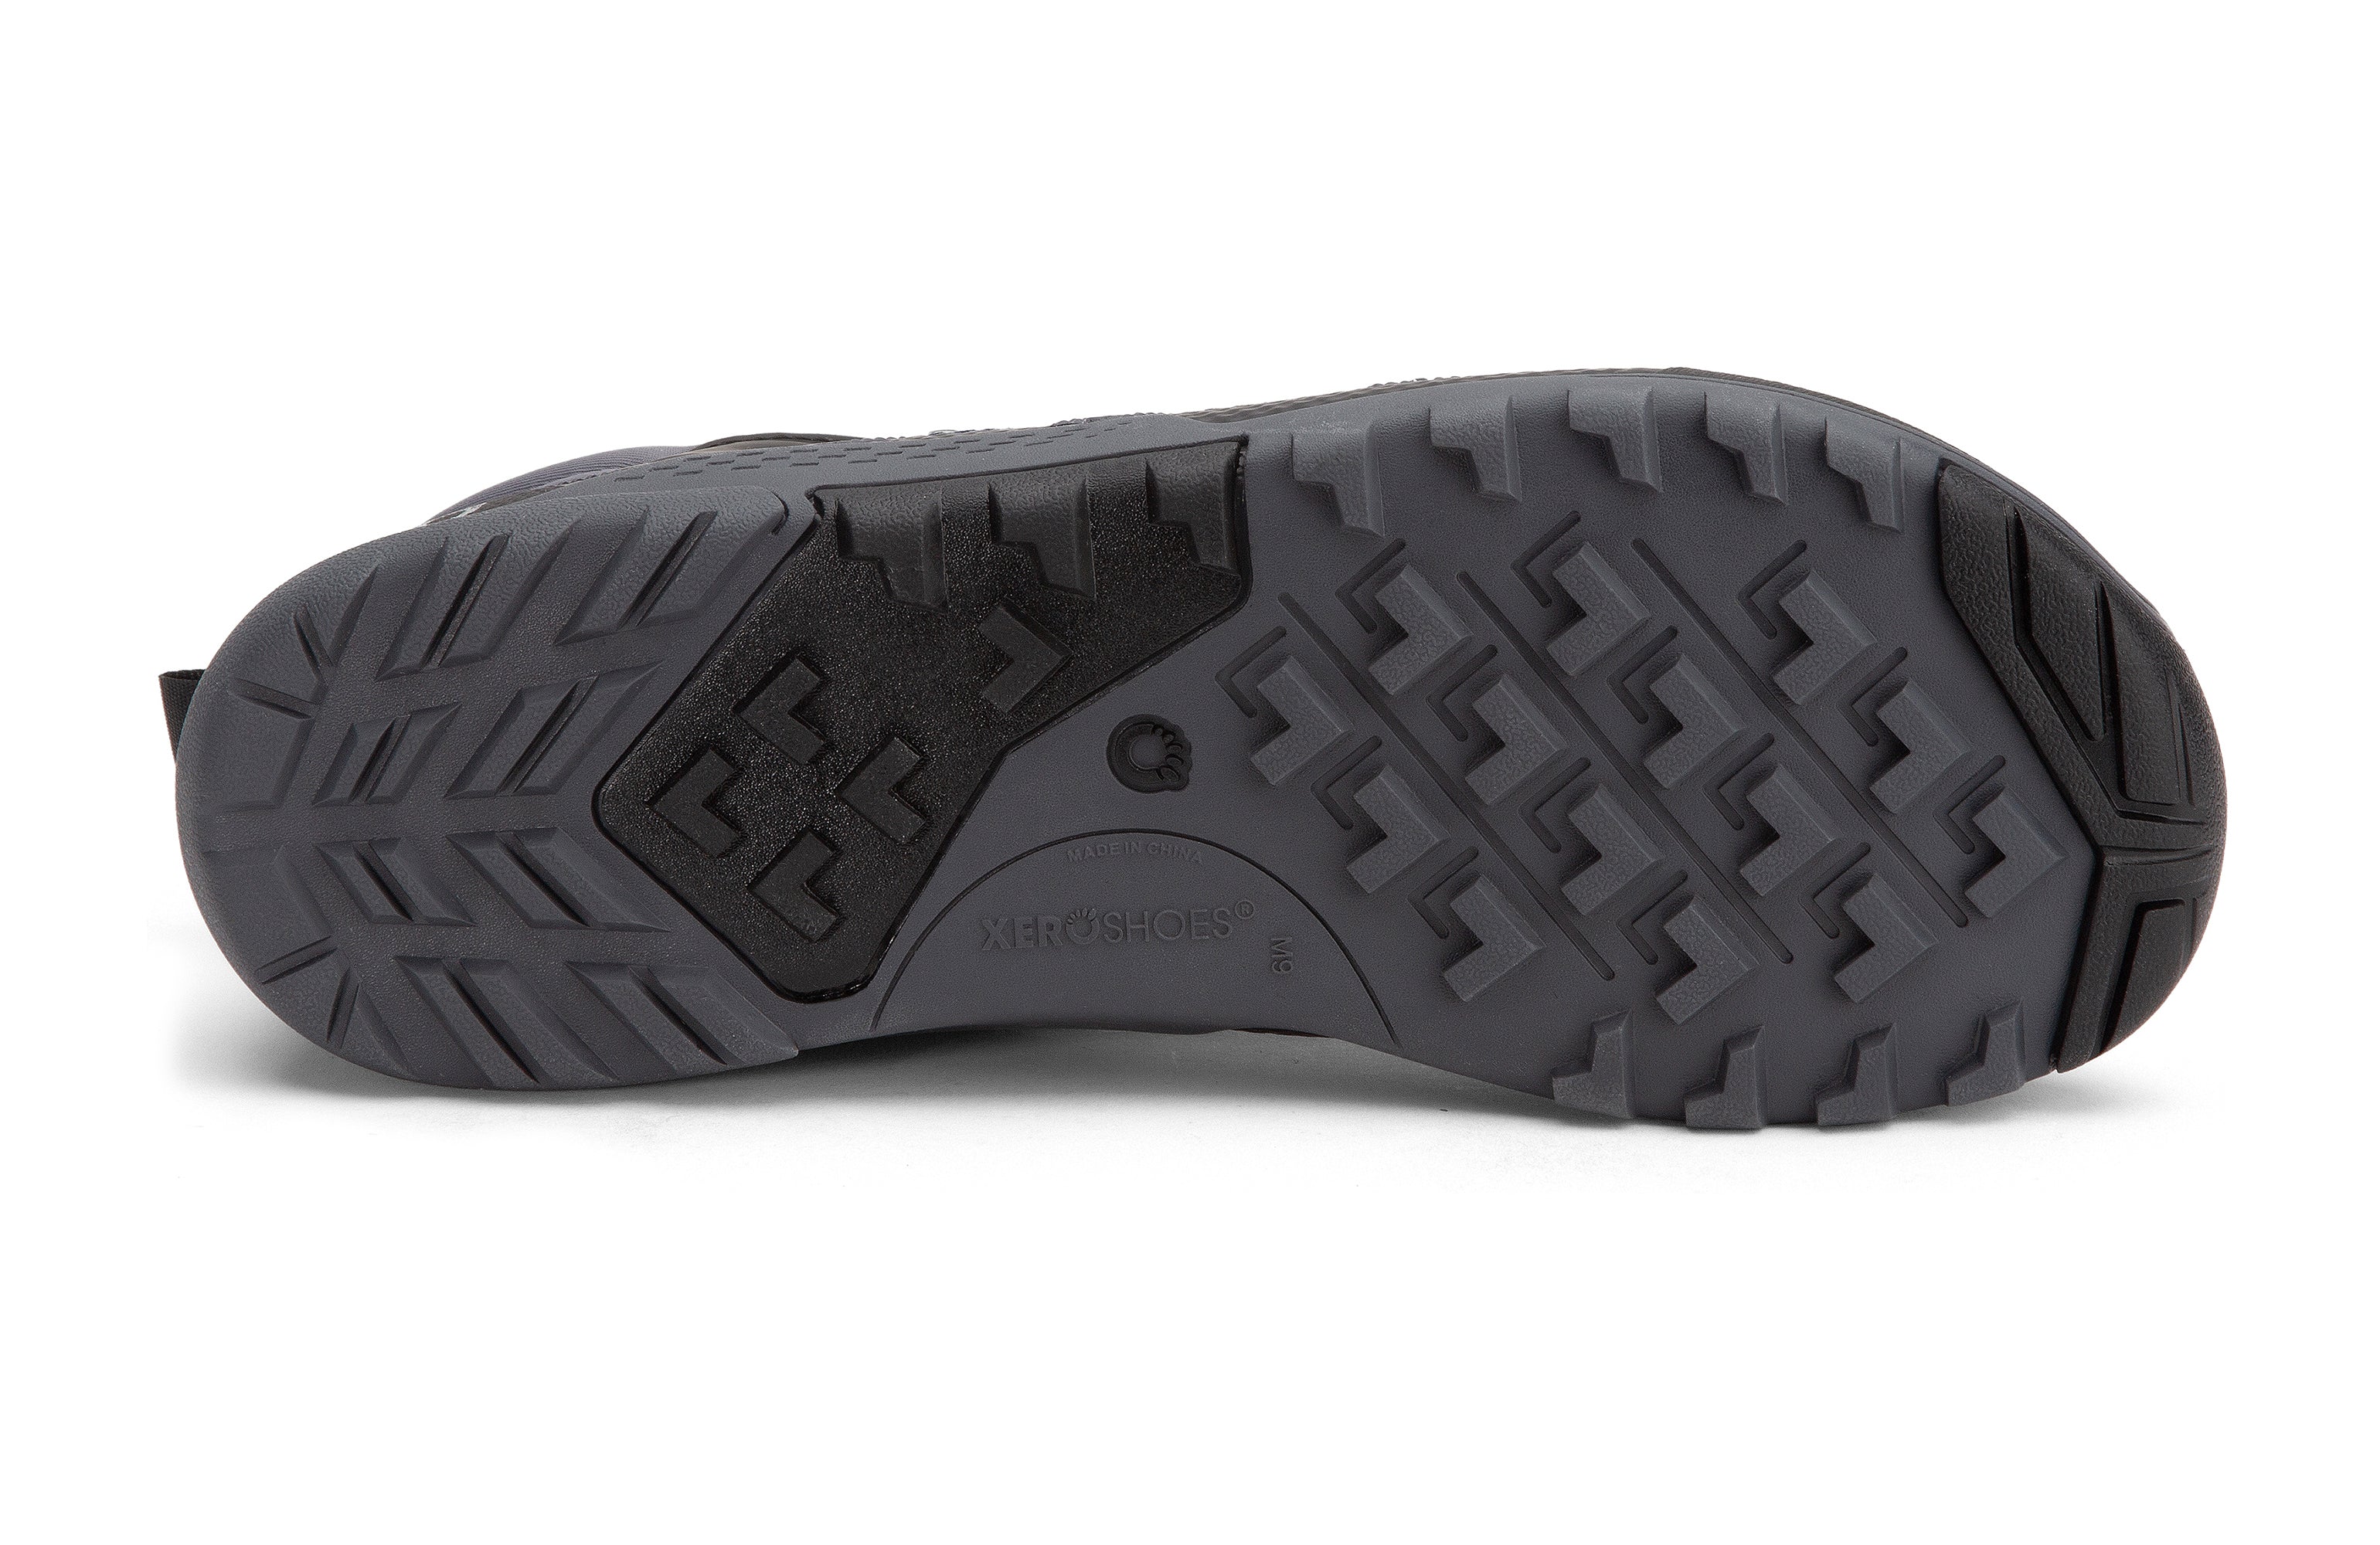 Xero Shoes Xcursion Fusion barfods støvler til mænd i farven moonlit blue / black, saal